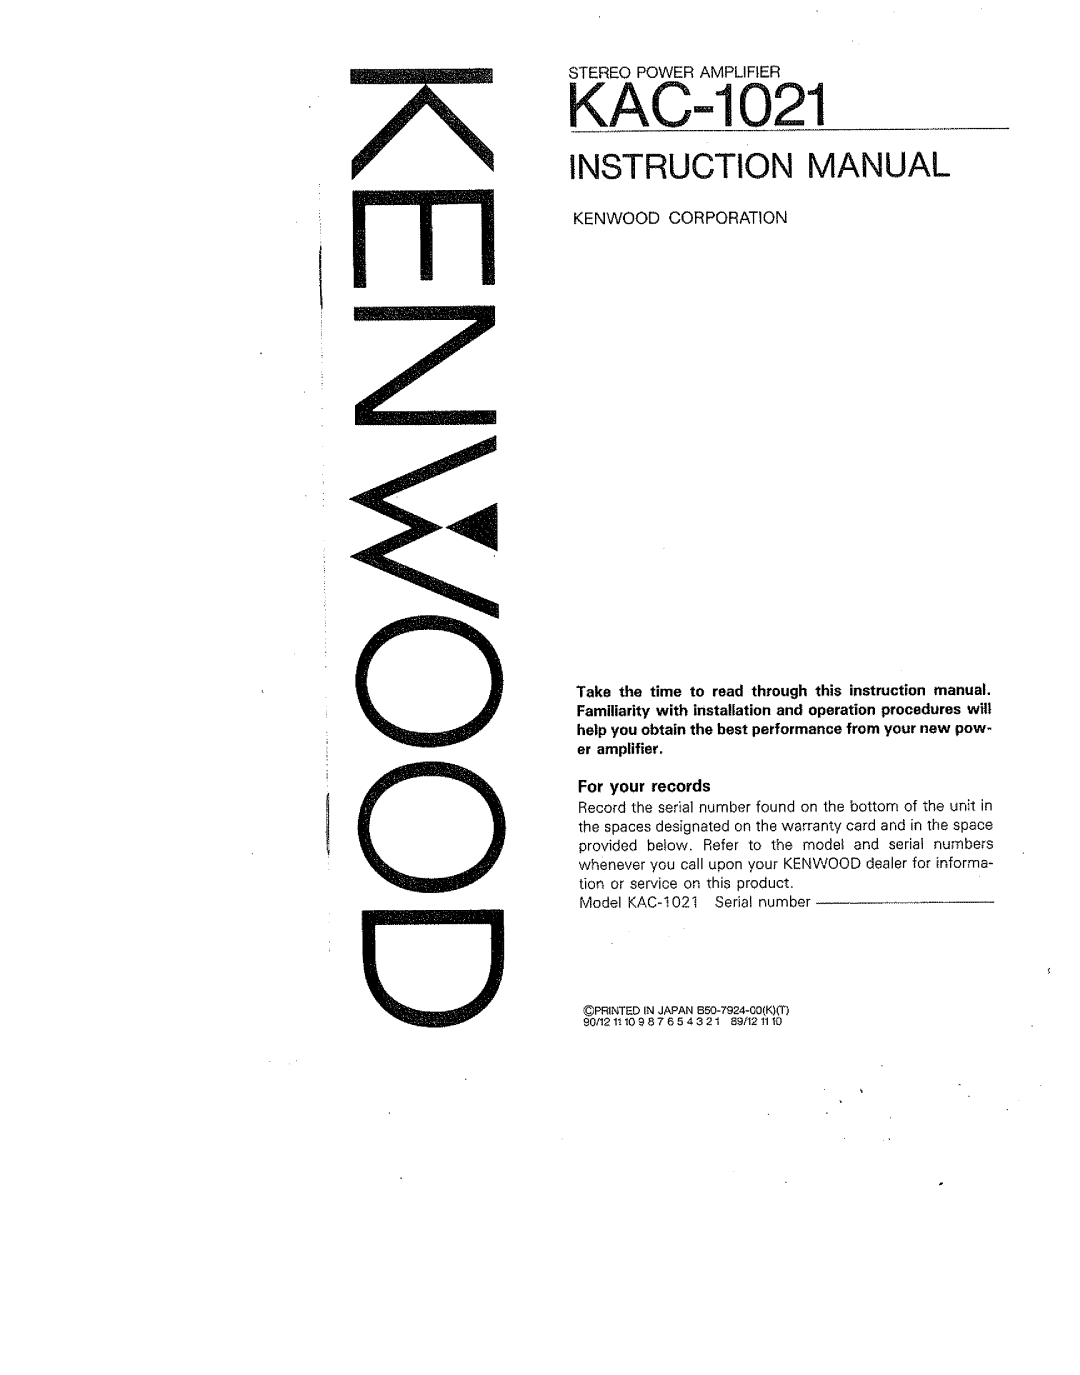 Kenwood KAC-1021 manual 